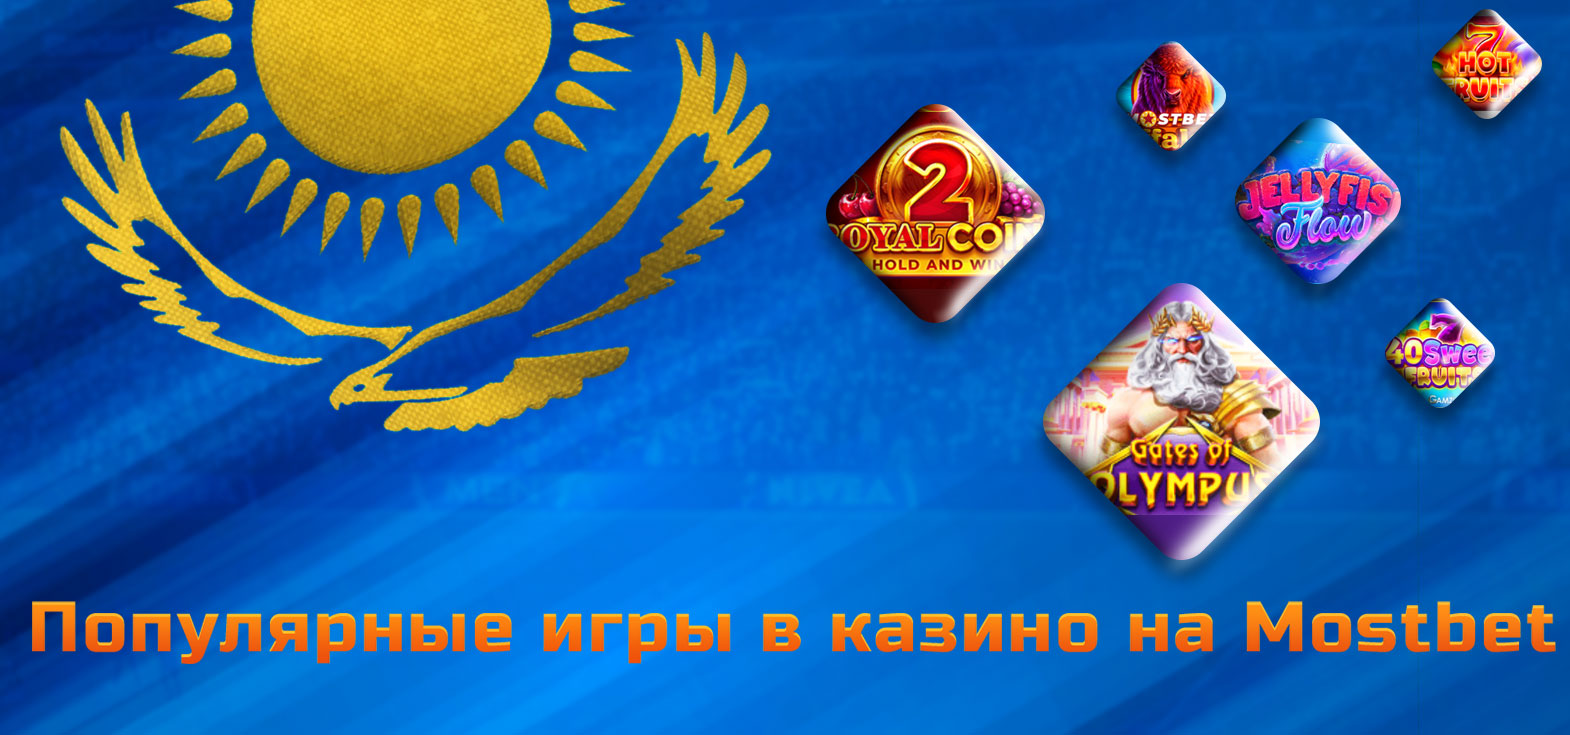 Все самые популярные игры в казино доступные на платформе Mostbet для игроков из Казахстана.